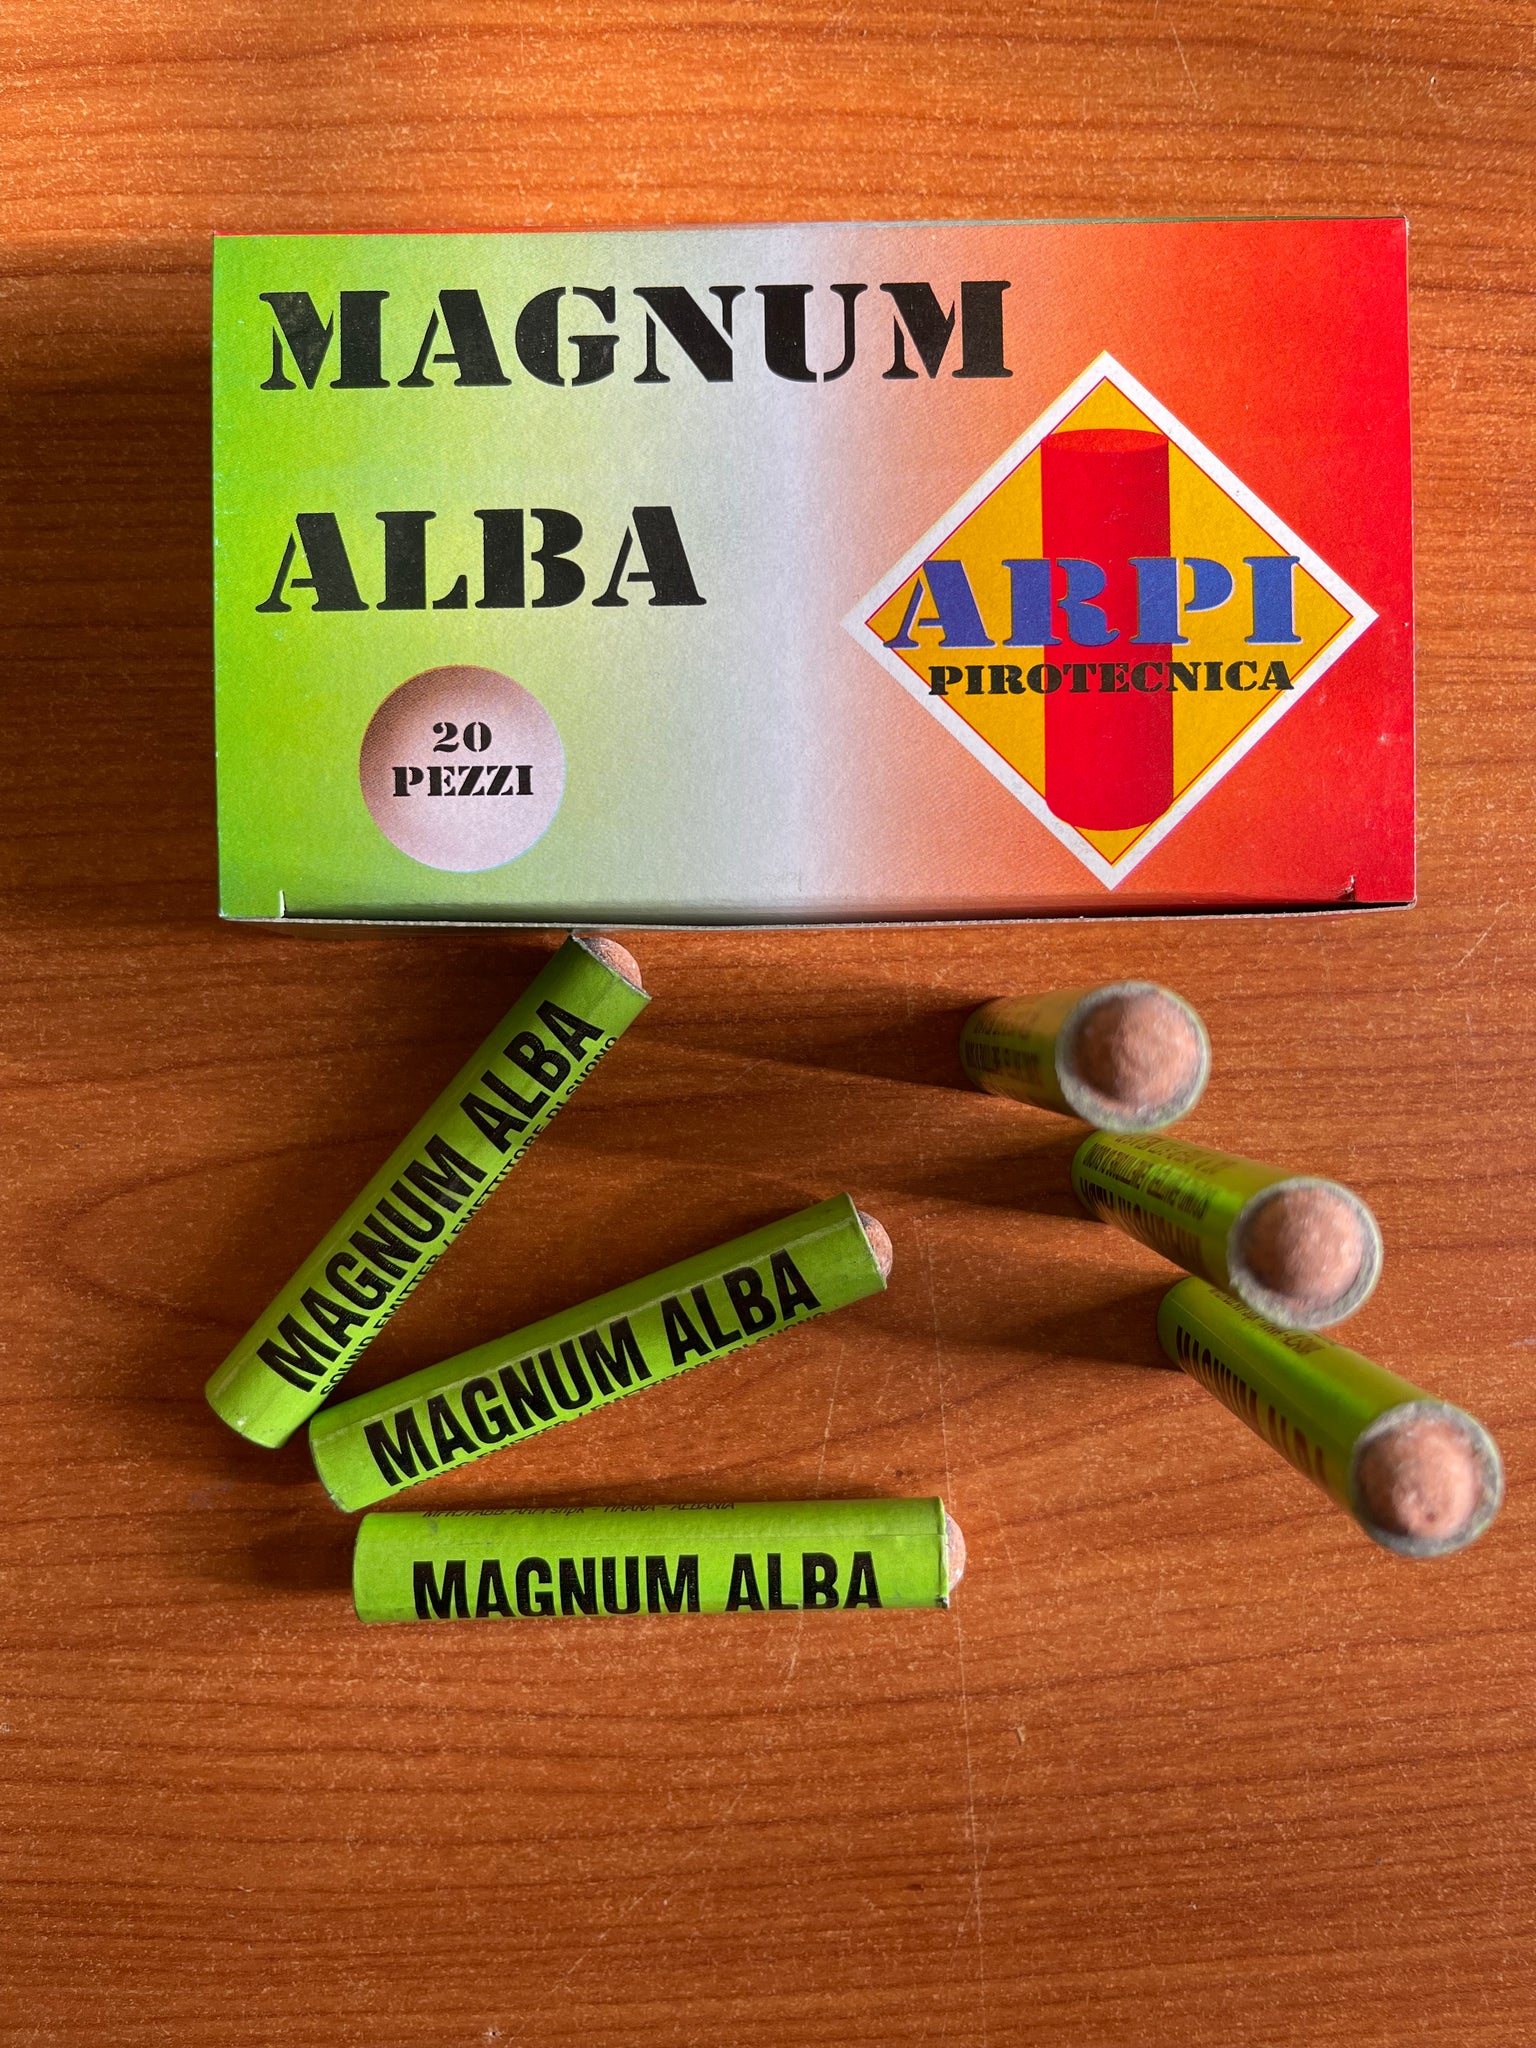 Magnum ALBA sfregamento